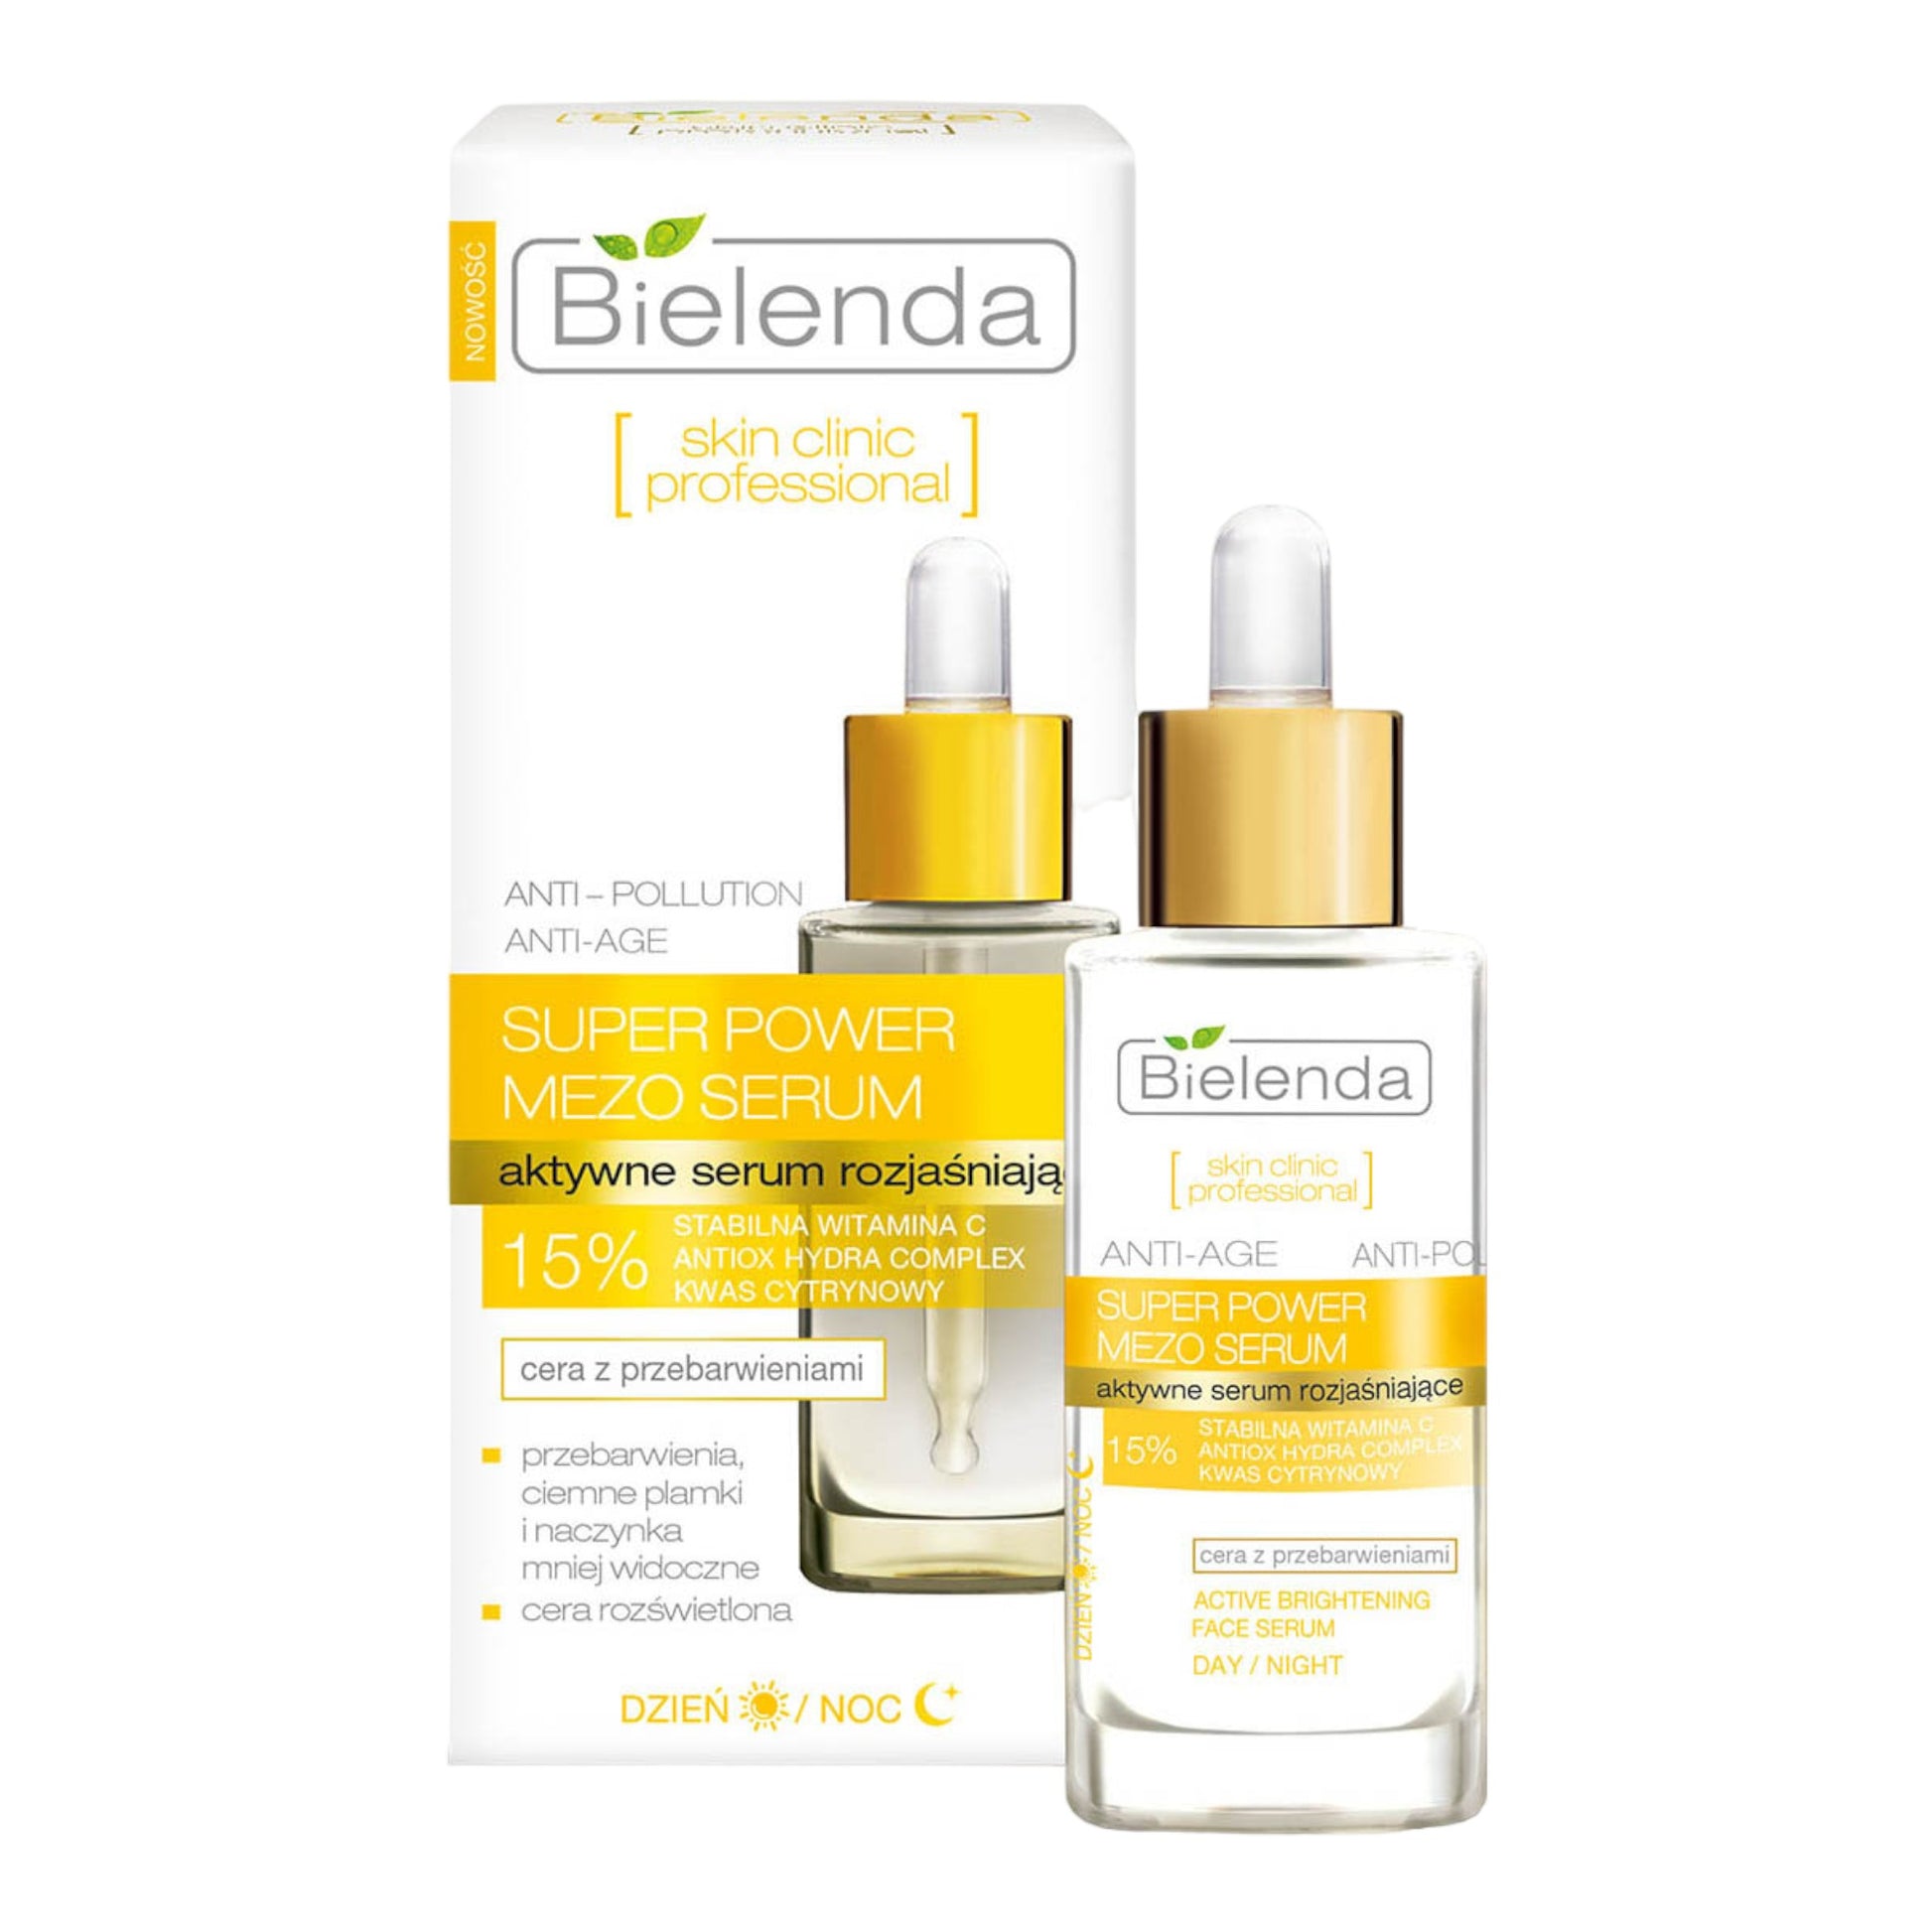 Bielenda, Skin Clinic Professional aktywne serum rozjaśniające 30ml